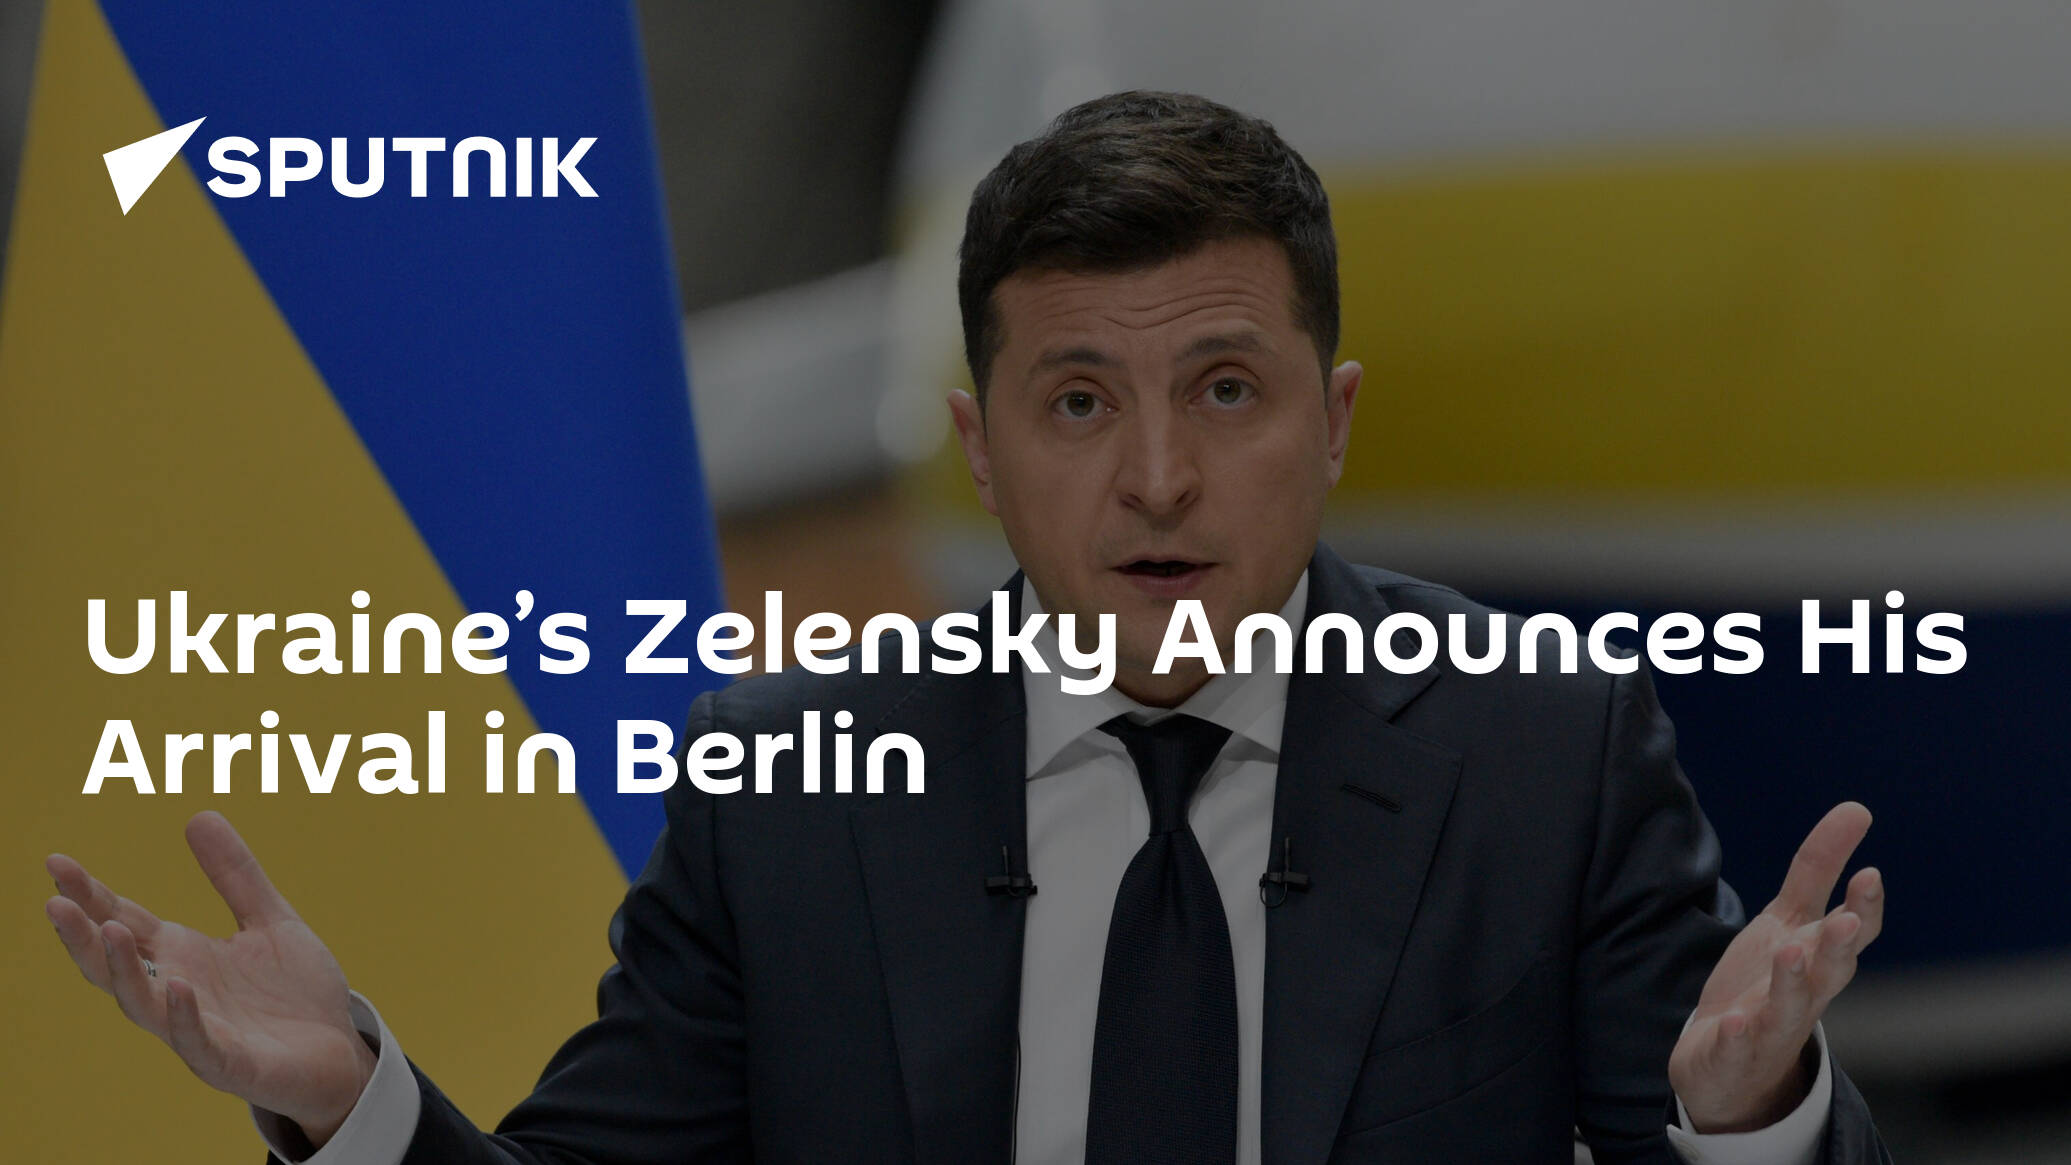 Ukraine’s Zelensky Announces His Arrival in Berlin